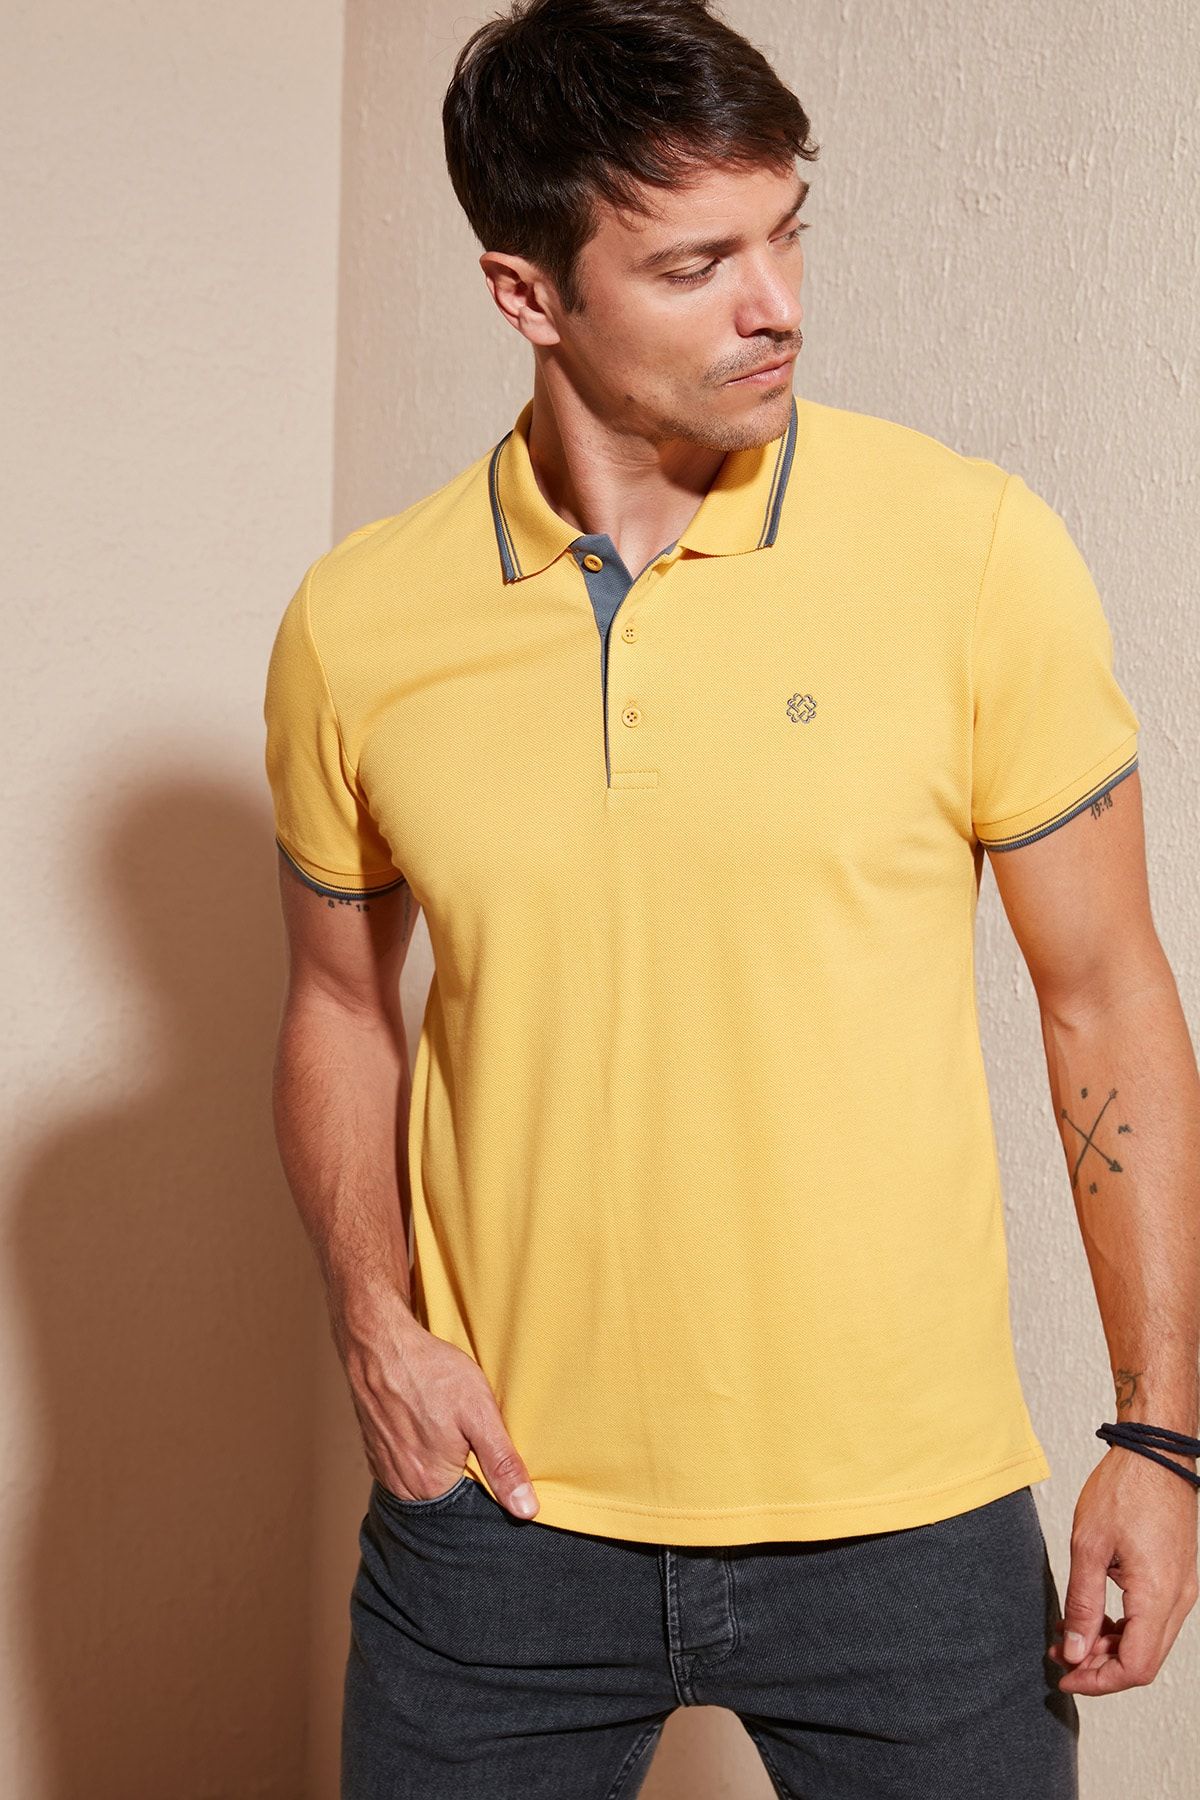 Buratti % 100 Pamuk Düğmeli Slim Fit Erkek Polo T Shirt 5902118 Tişört